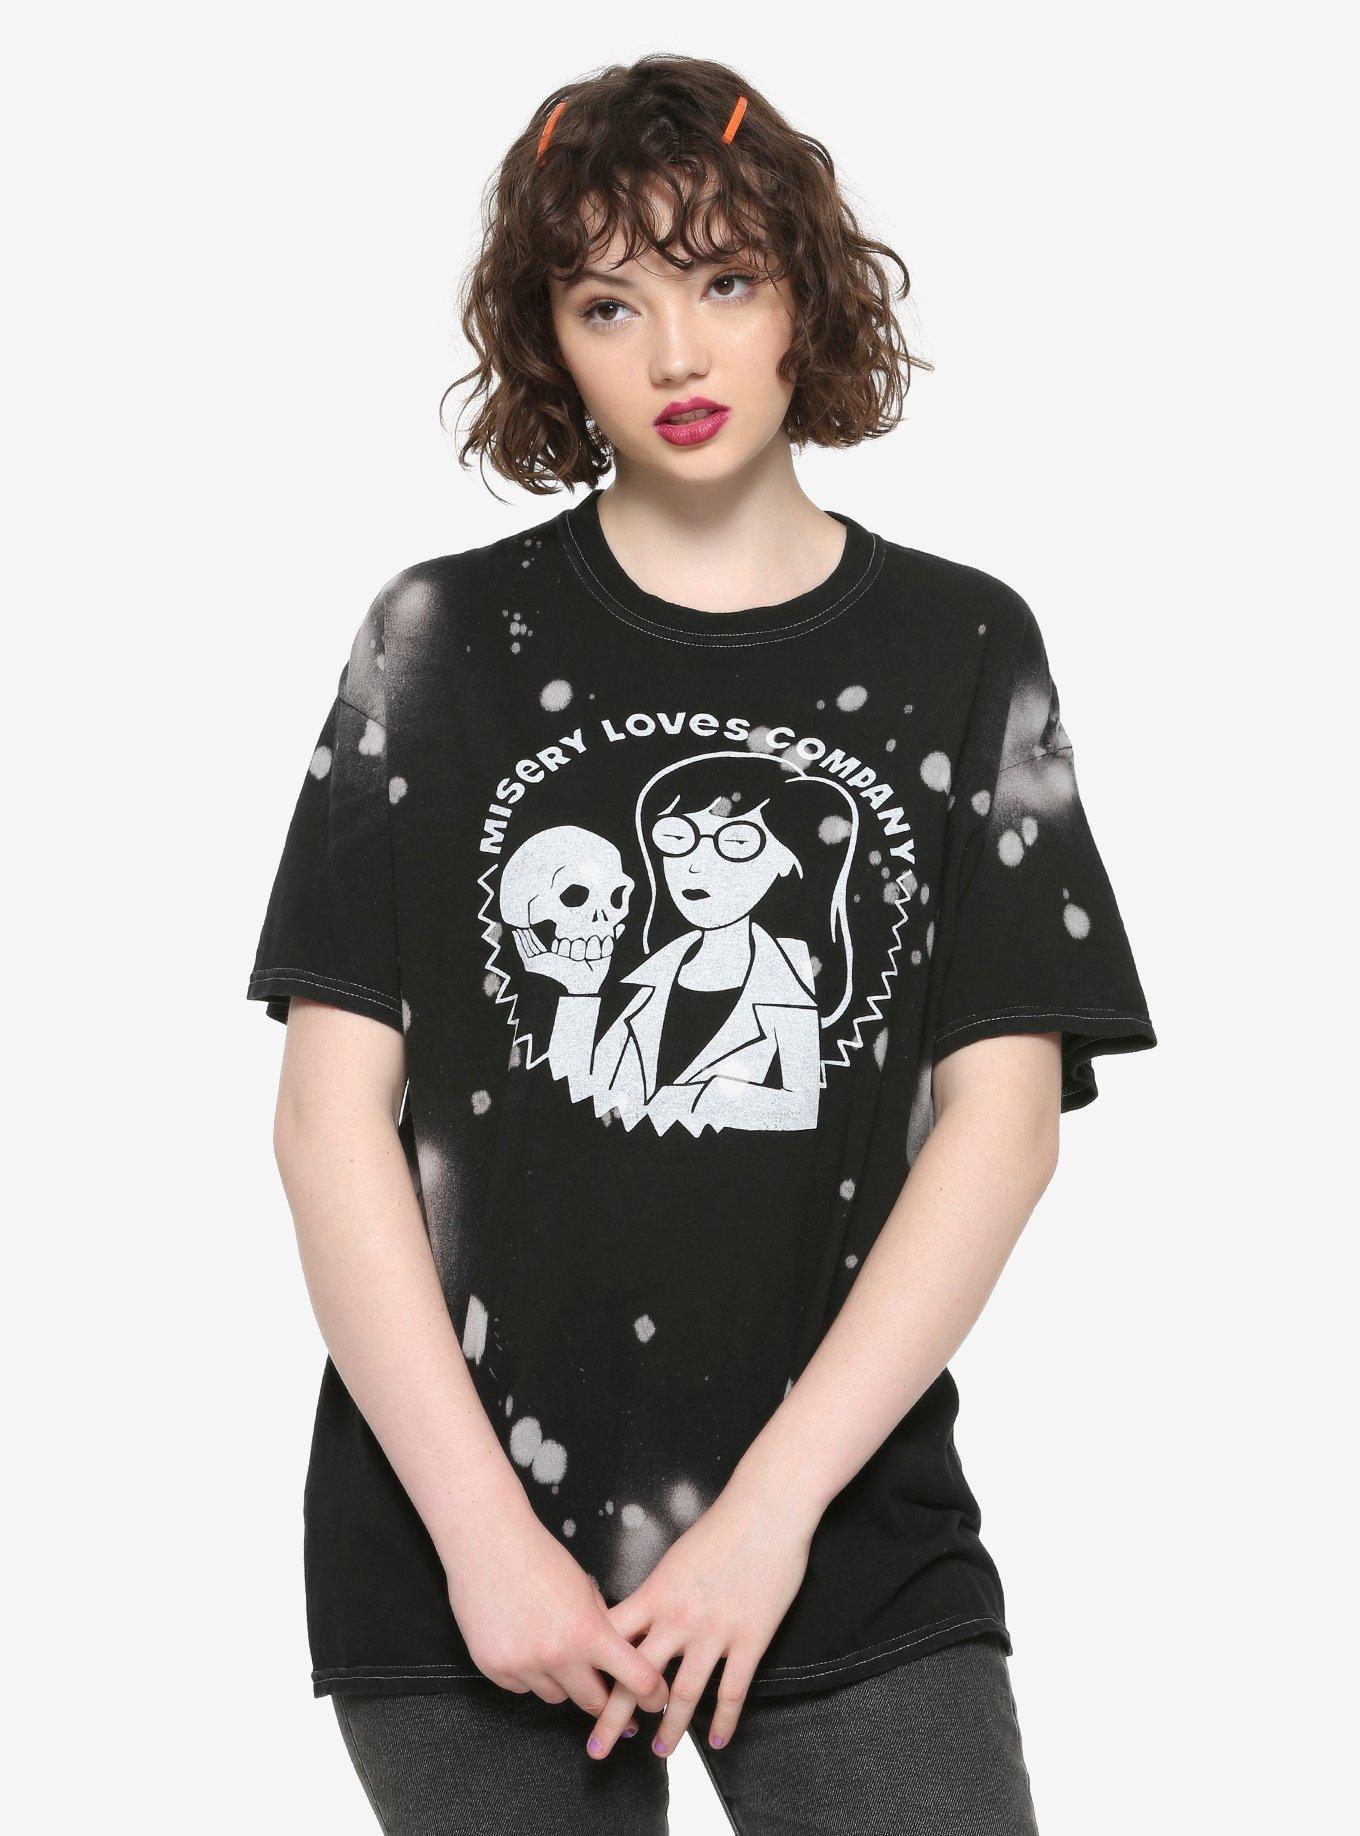 Daria Misery Loves Company Bleach Splatter Girls T-Shirt, WHITE, hi-res